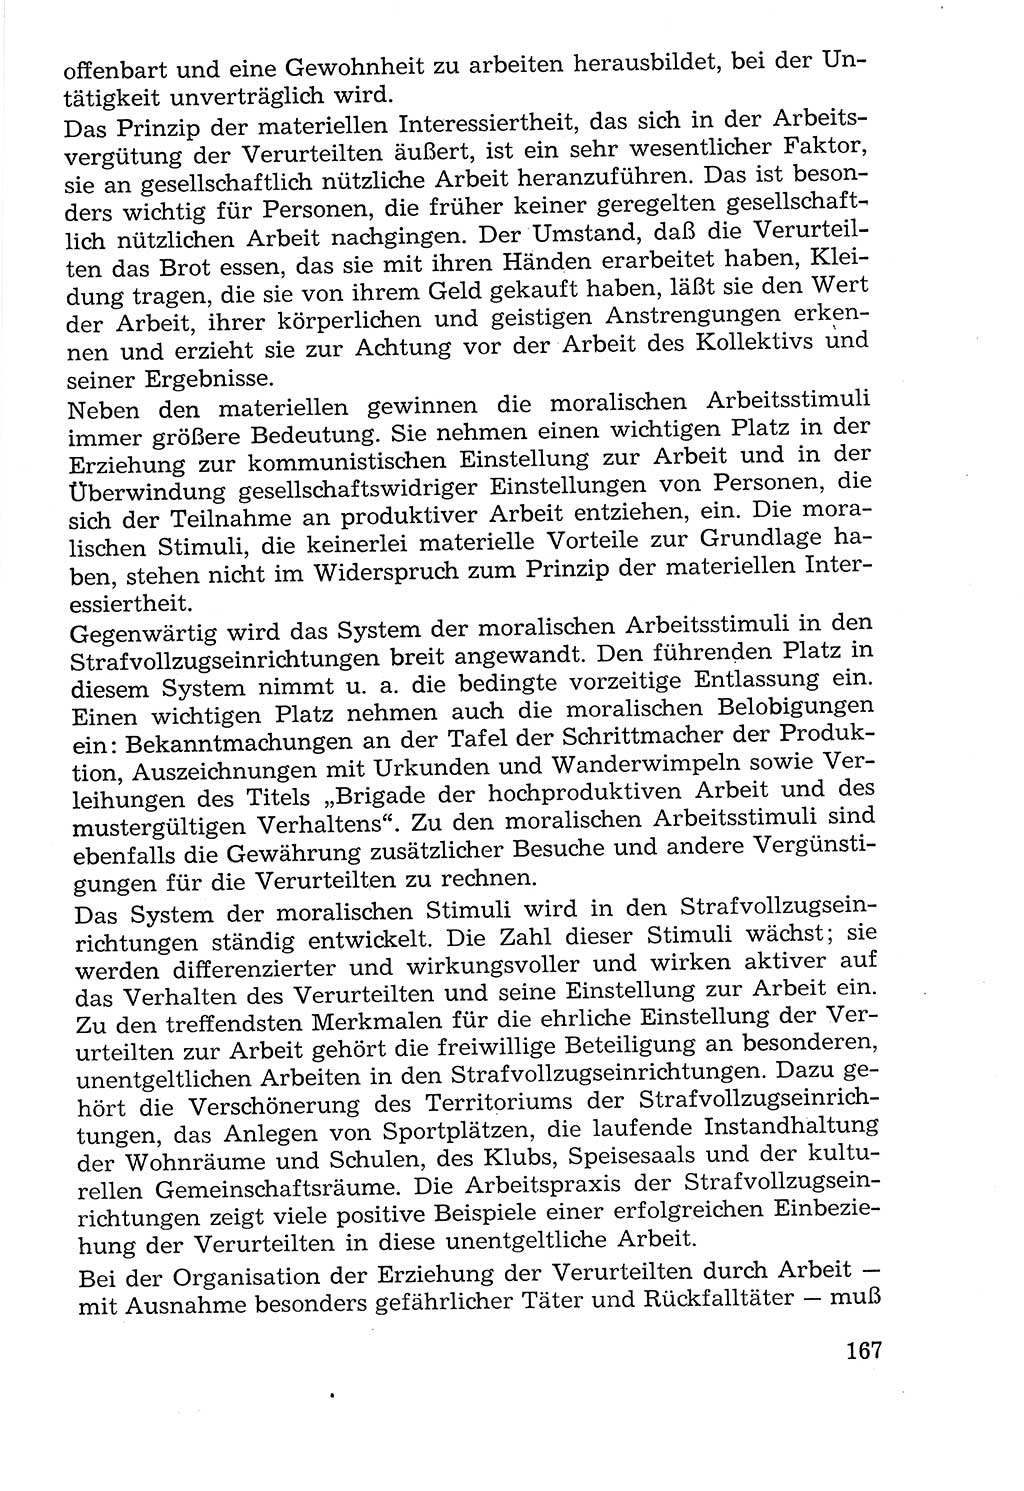 Lehrbuch der Strafvollzugspädagogik [Deutsche Demokratische Republik (DDR)] 1969, Seite 167 (Lb. SV-Pd. DDR 1969, S. 167)